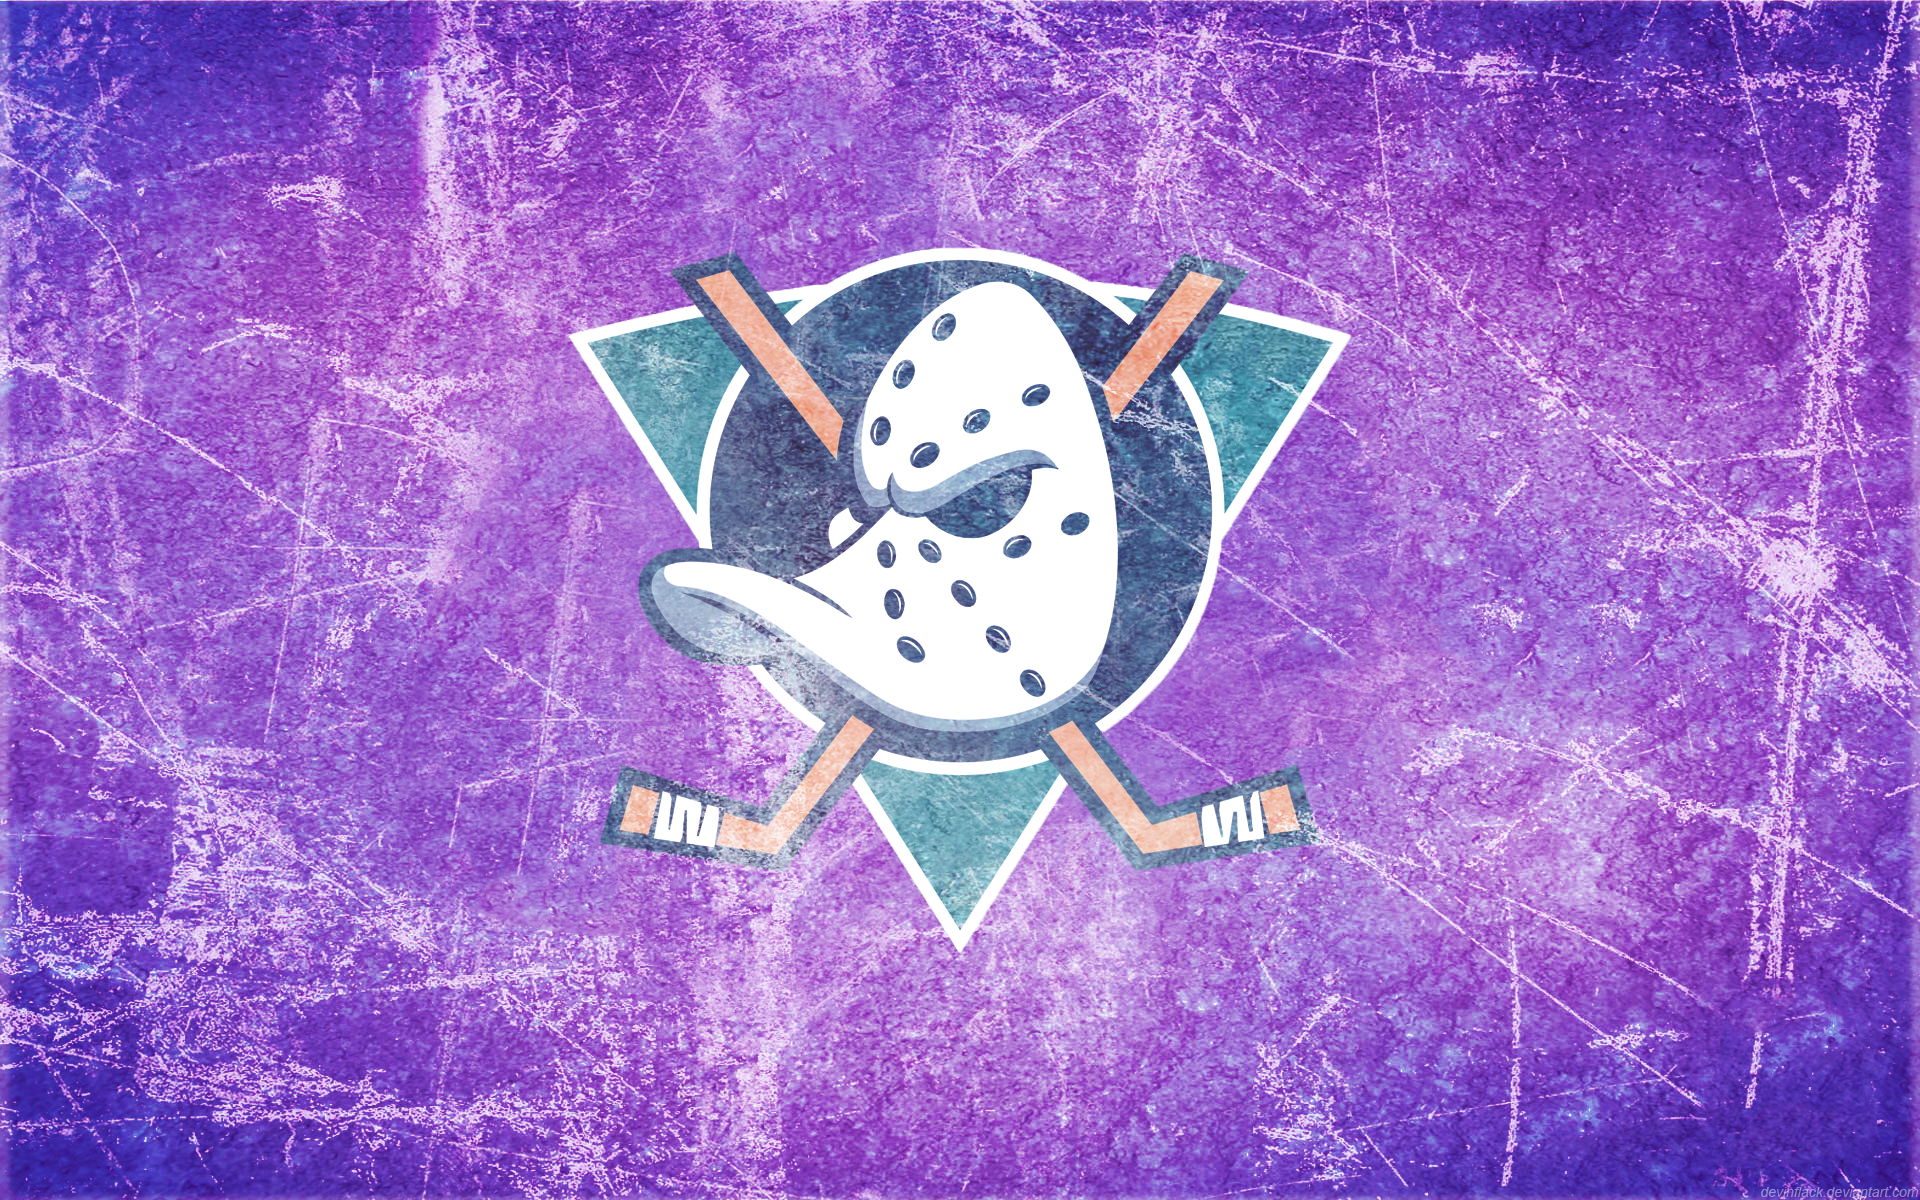 Sports Anaheim Ducks HD Wallpaper | Background Image